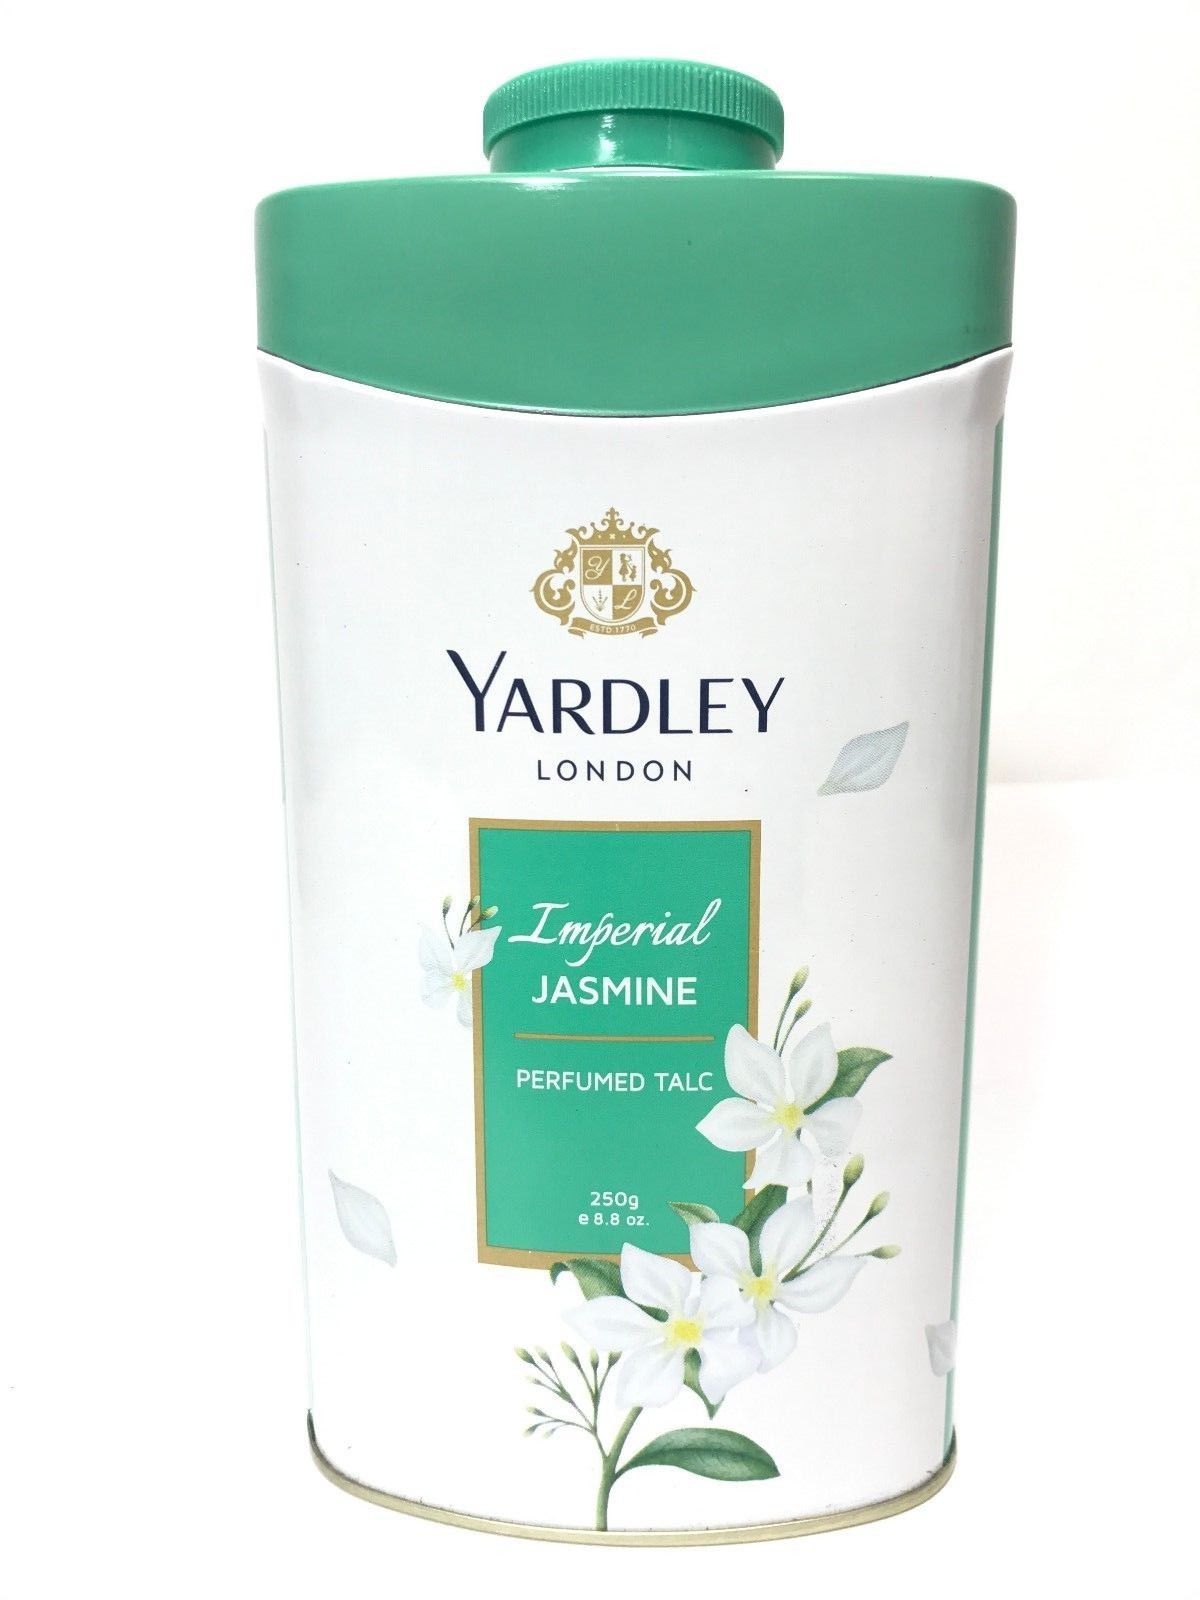 Yardley London Perfumed Talc Imperial Jasmine Talcum Powder 8.8 Oz (250 G)